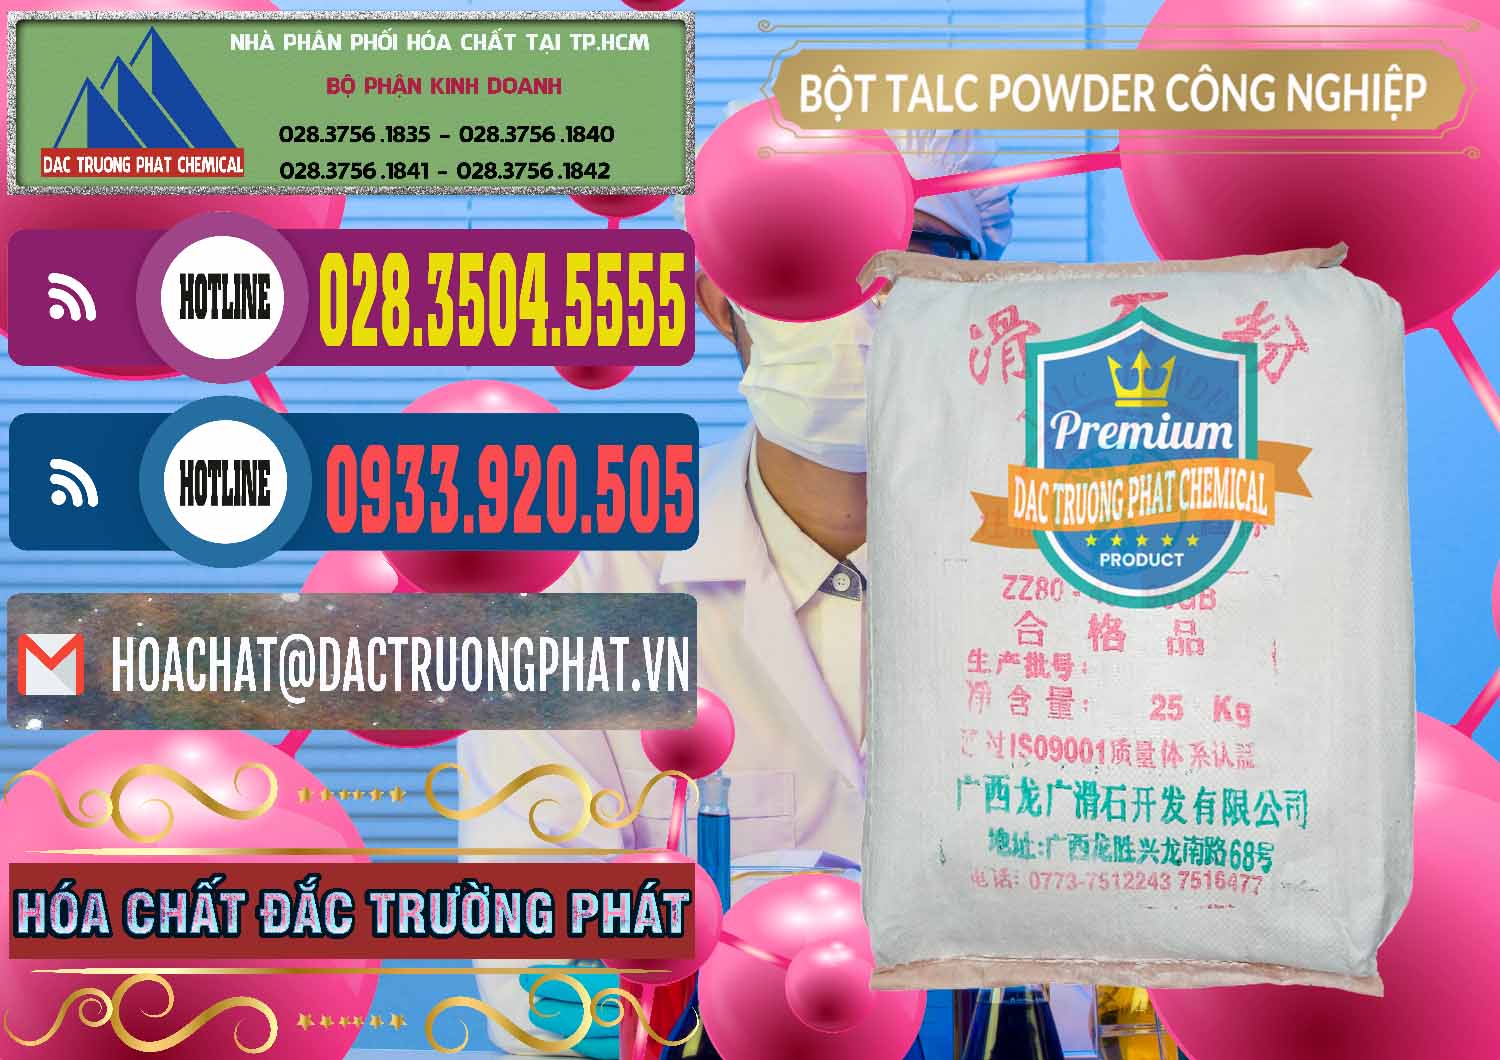 Nơi bán ( phân phối ) Bột Talc Powder Công Nghiệp Trung Quốc China - 0037 - Chuyên phân phối ( nhập khẩu ) hóa chất tại TP.HCM - muabanhoachat.com.vn